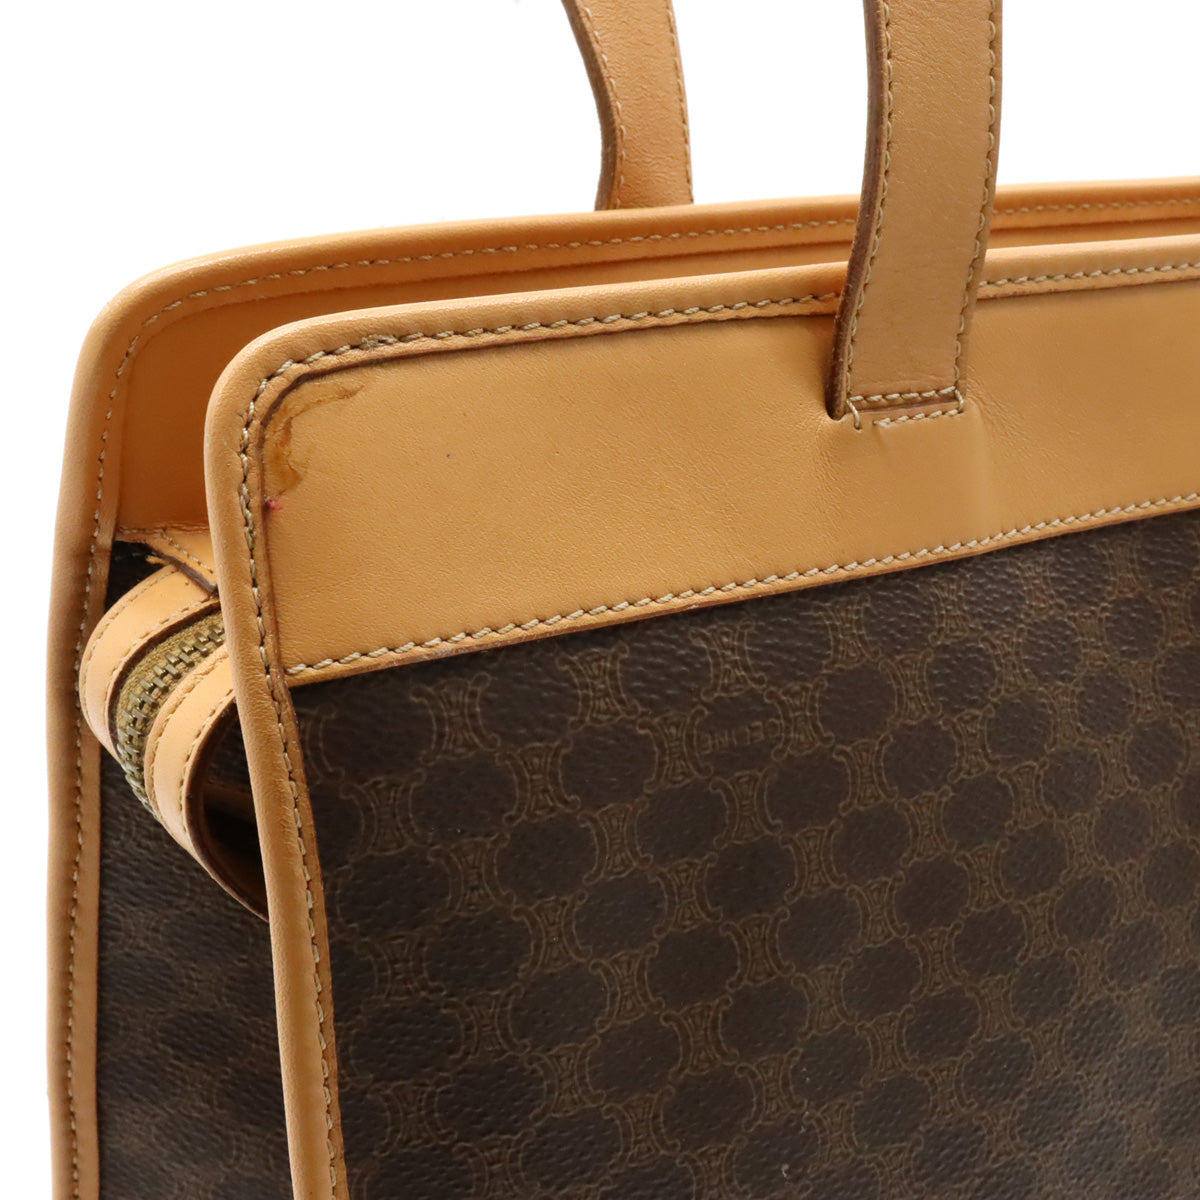 【Bag】CELINE Celine Macadame Cloth  Bag Shoulder Bag Semi-sholder PVC Leather Dark Brown Tea Natural Gold  【Middle East】 Bottle Blumen/Mosaic Quality